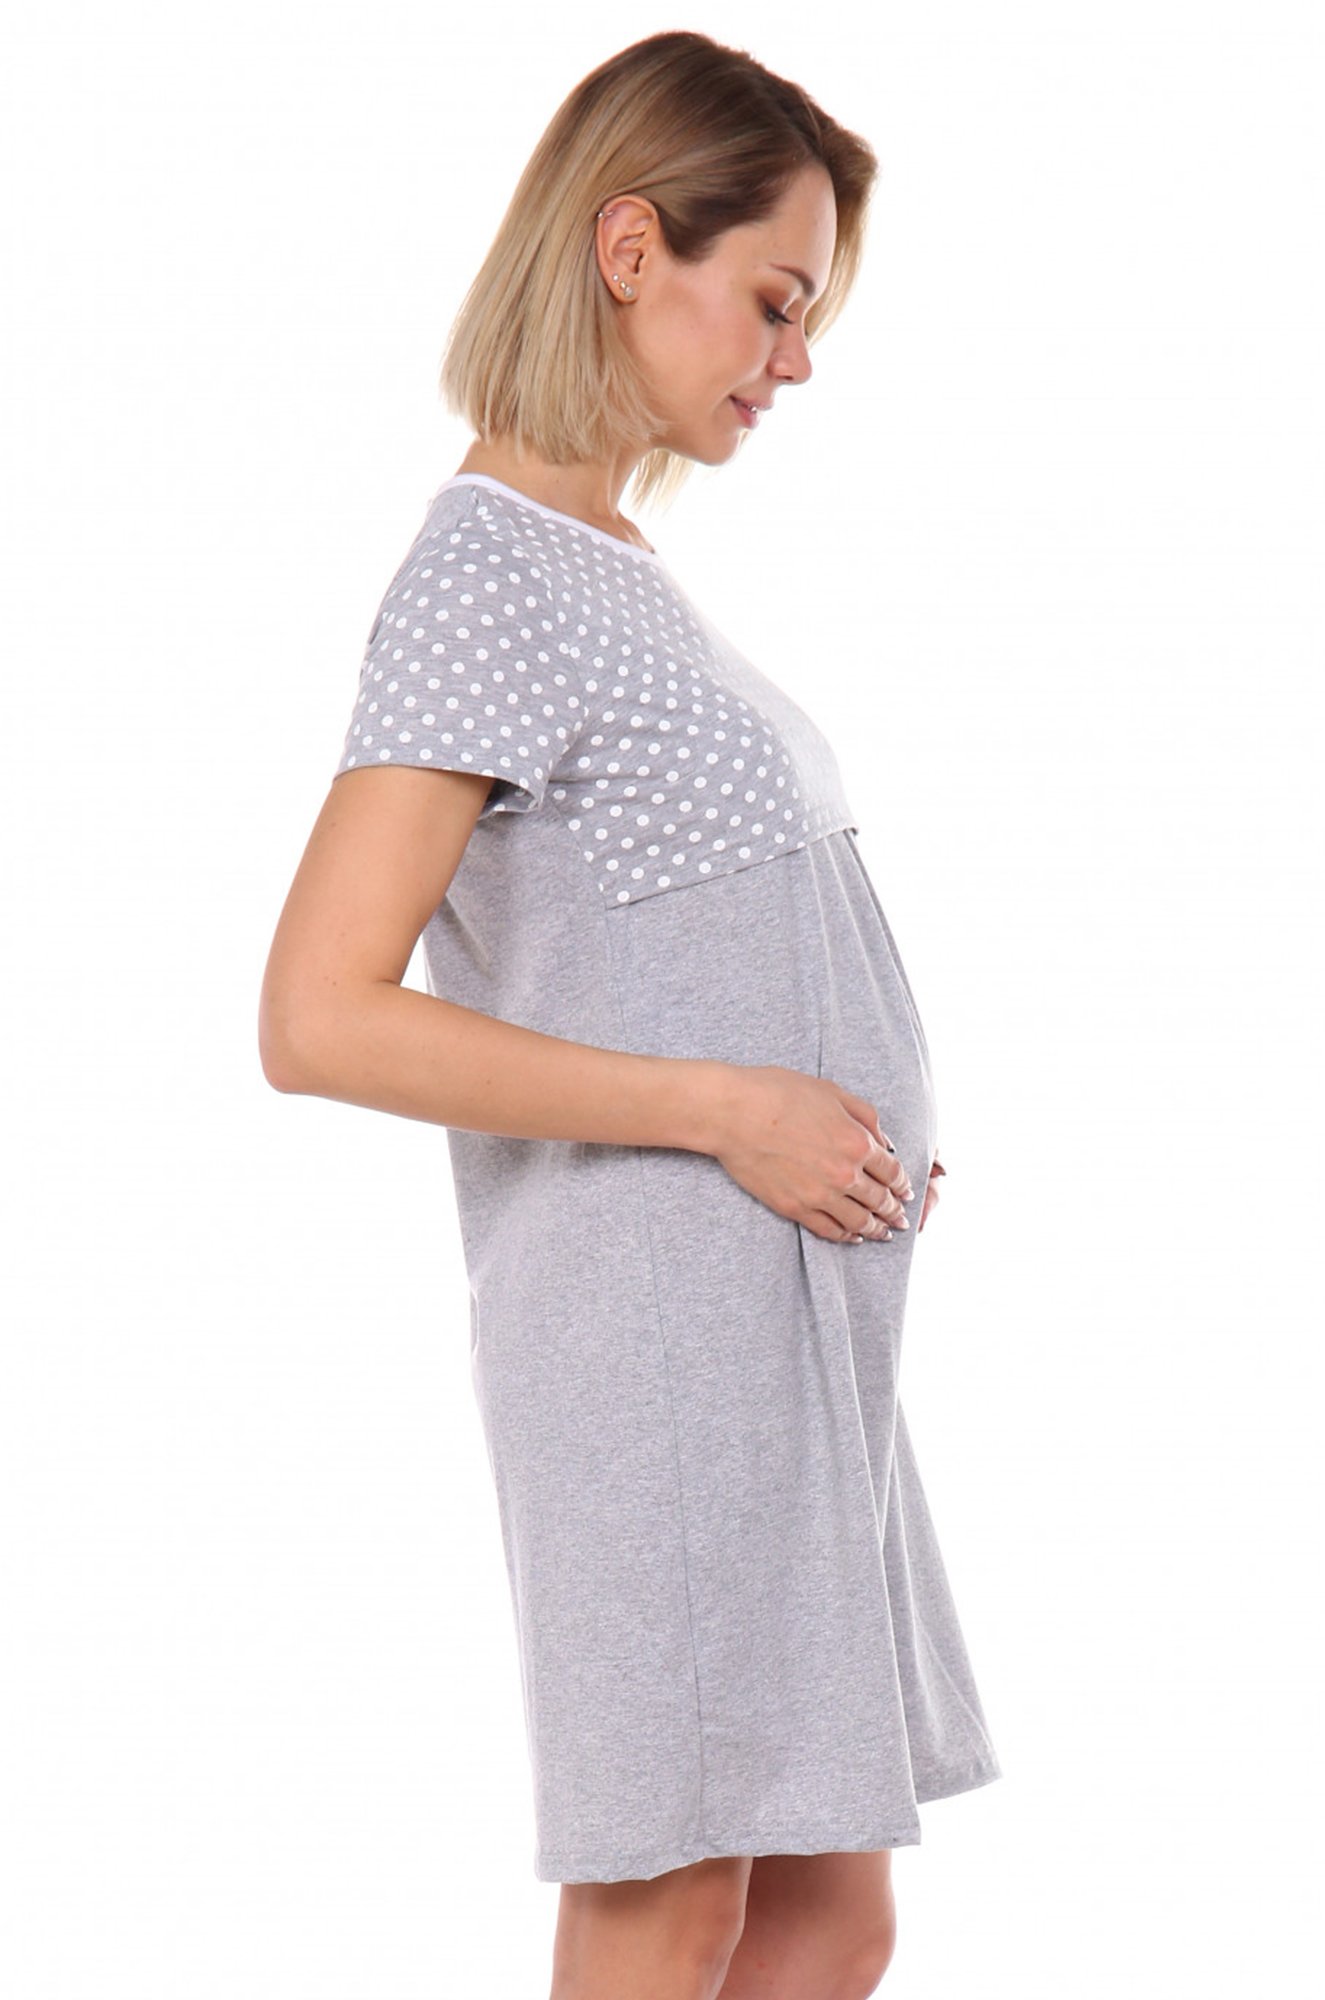 Сорочка женская для беременных Элиза